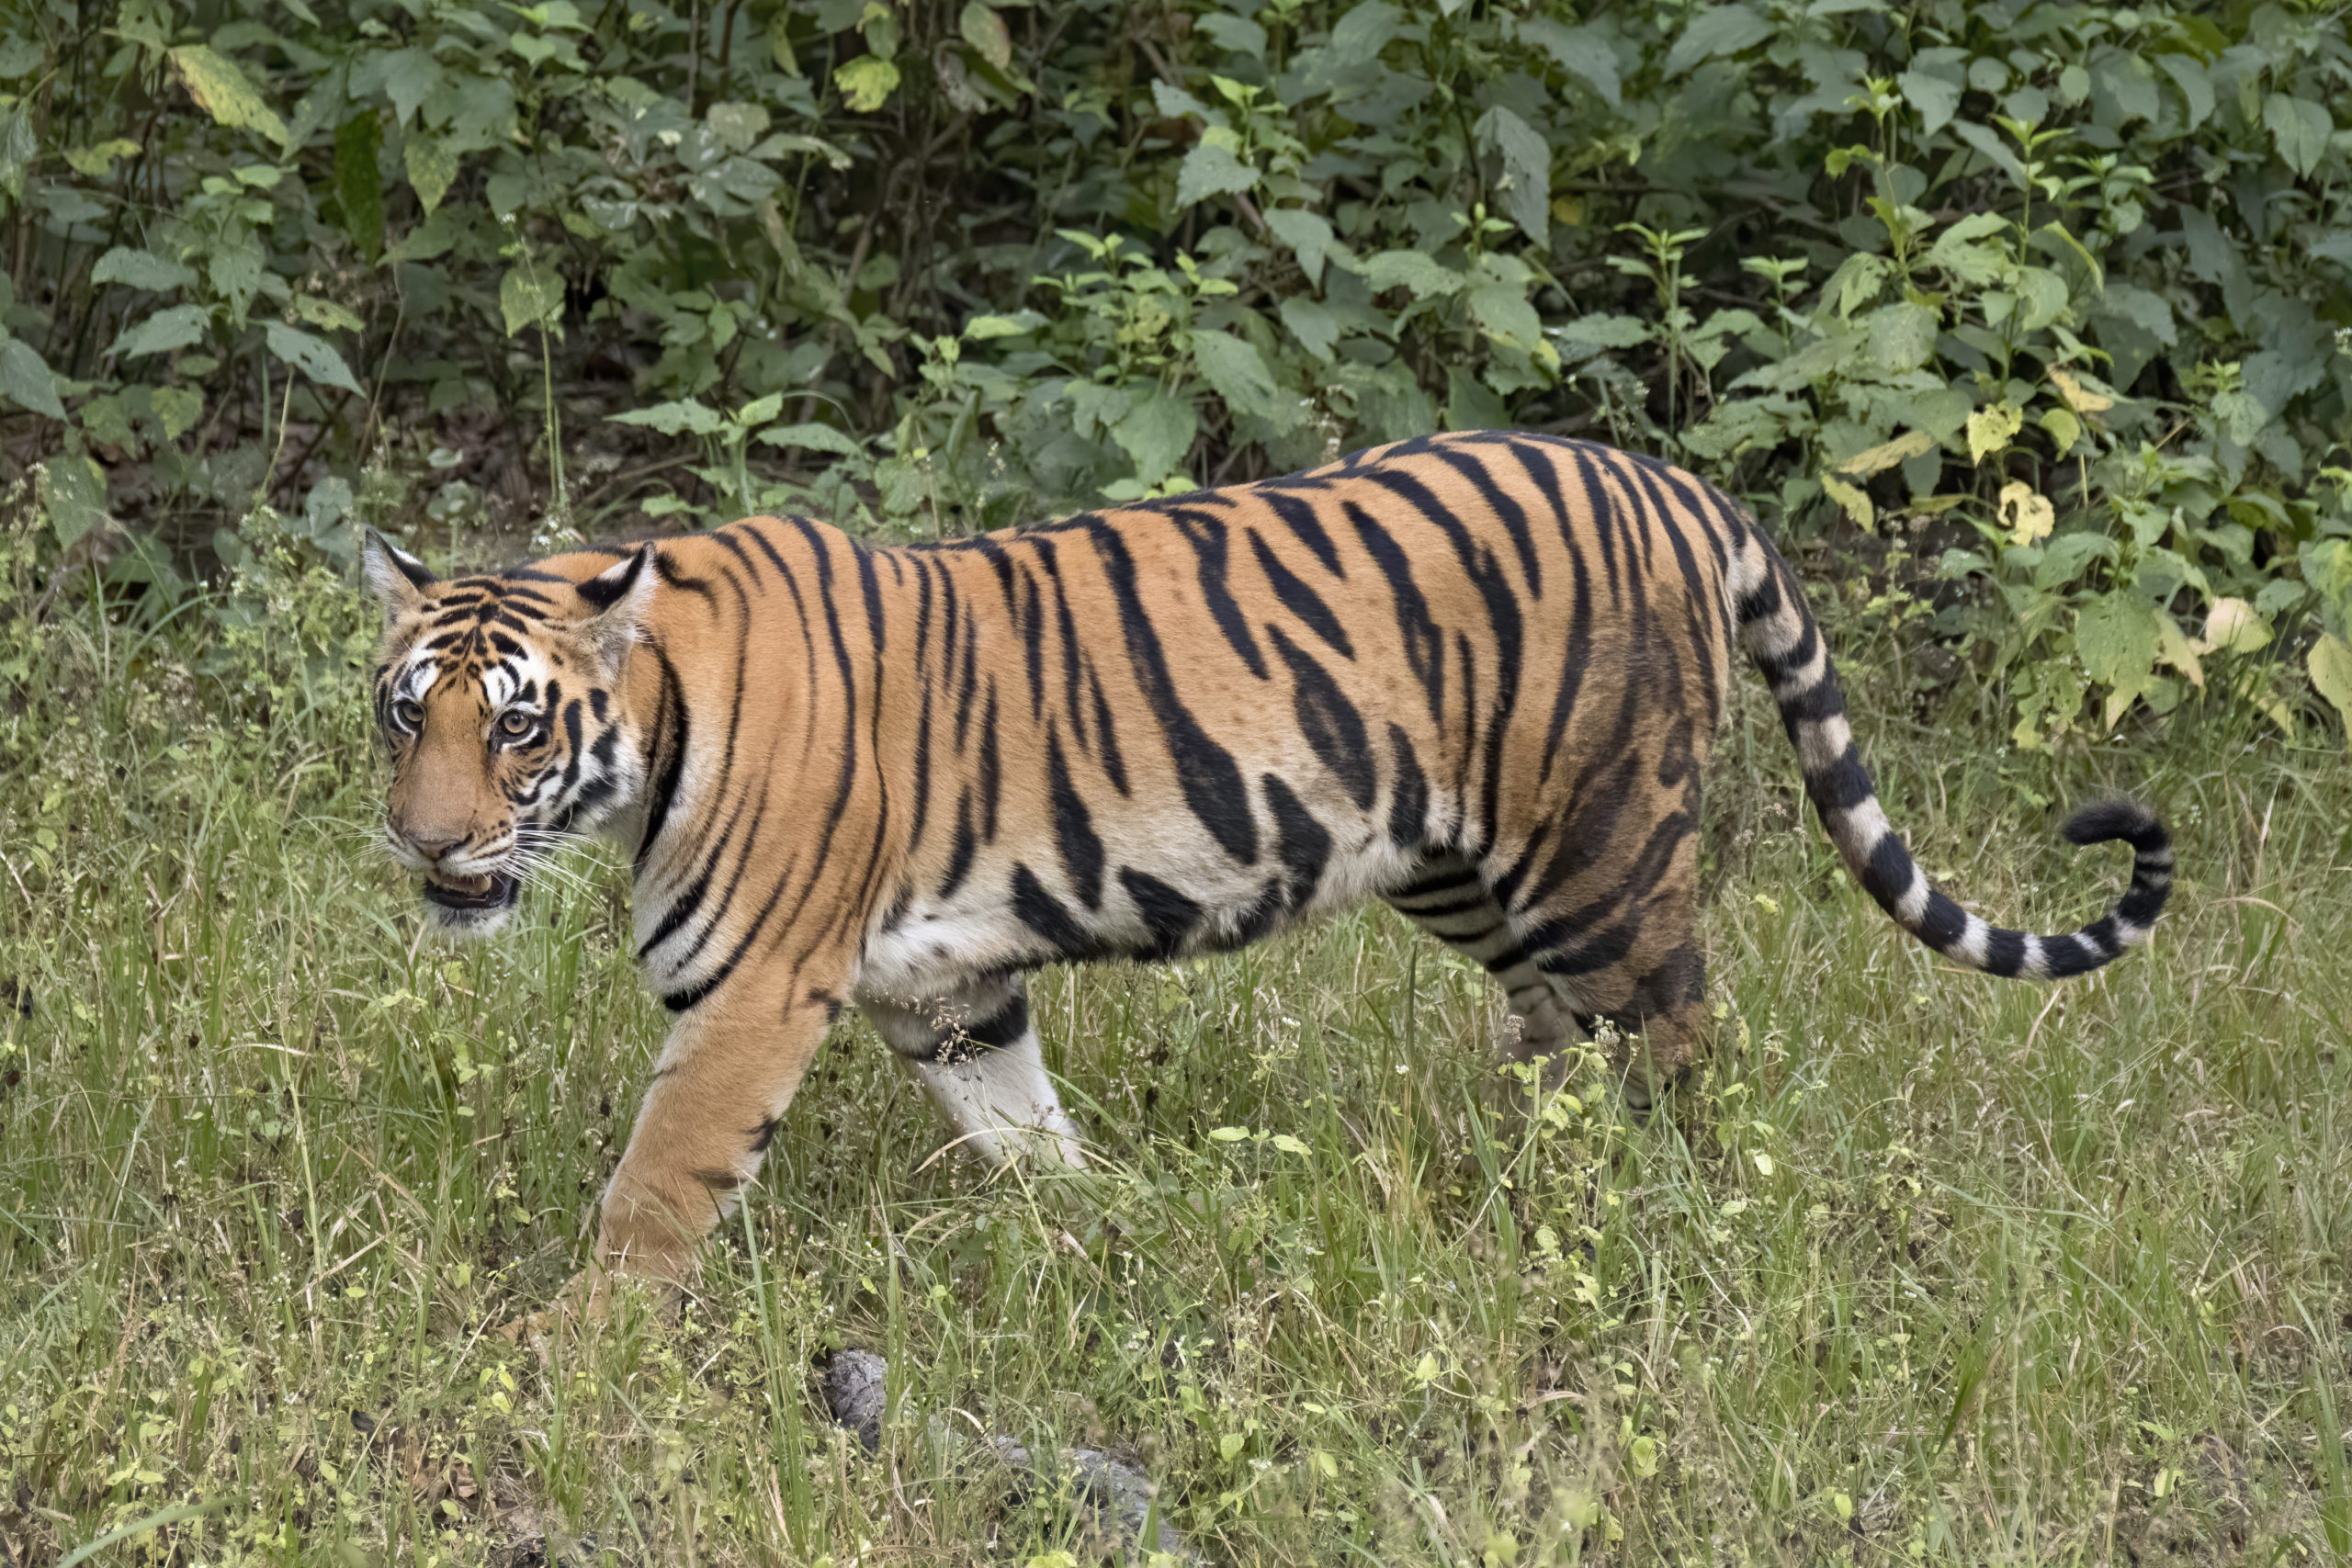  Tiger attack claims life of 10-year-old in Bardiya